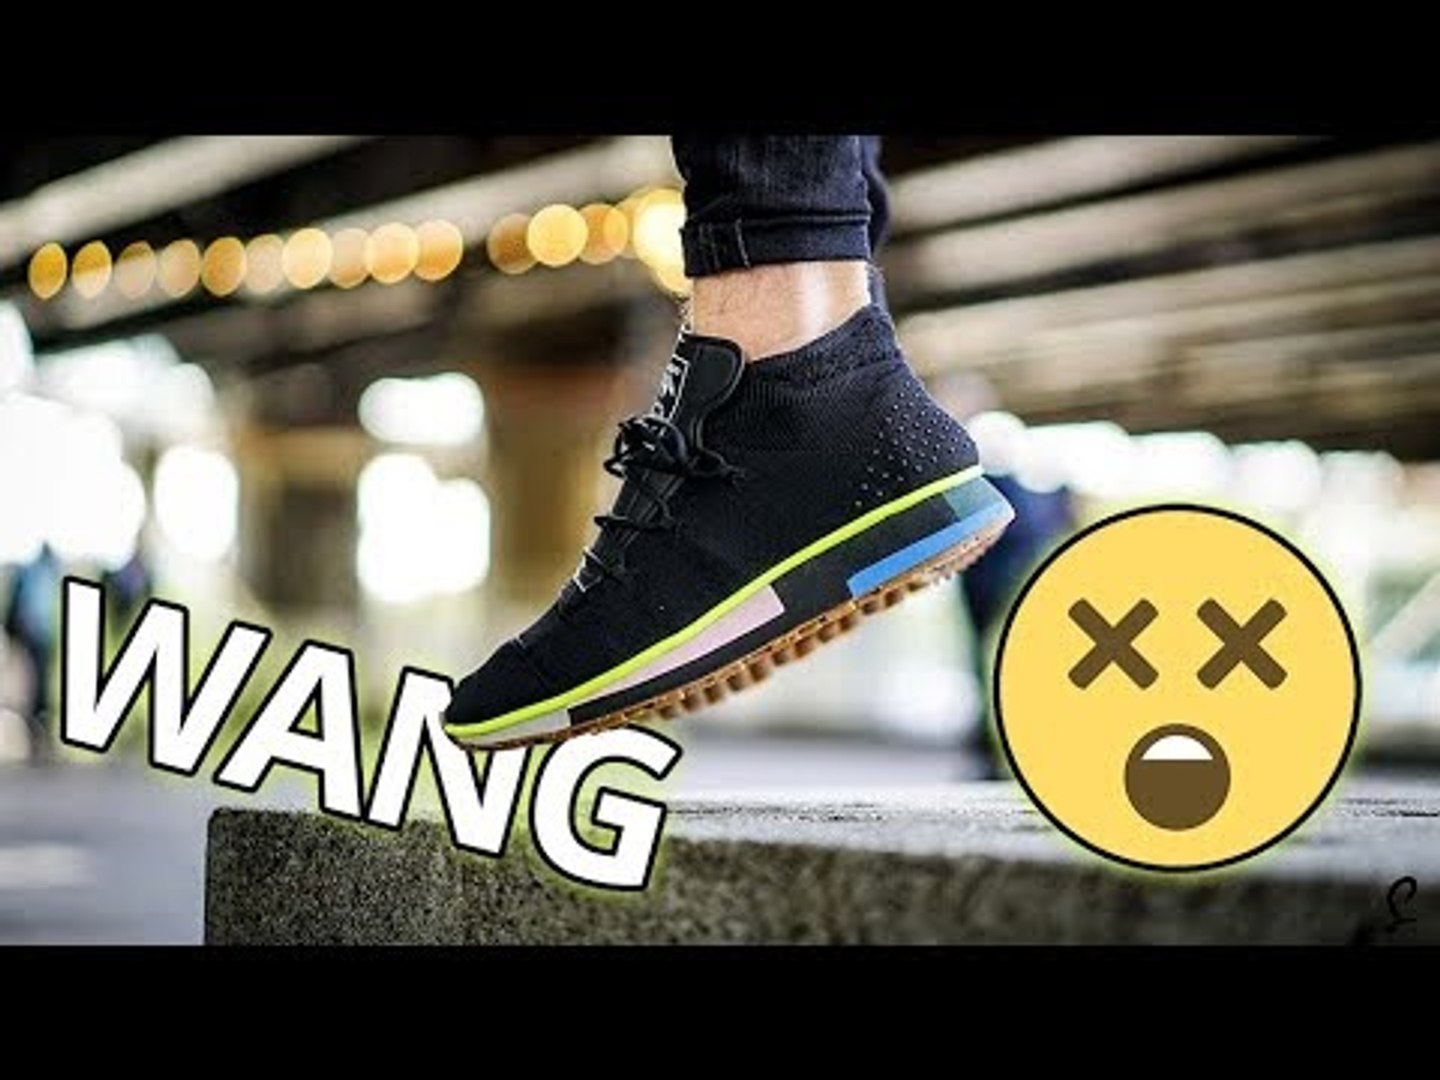 adidas alexander wang on feet